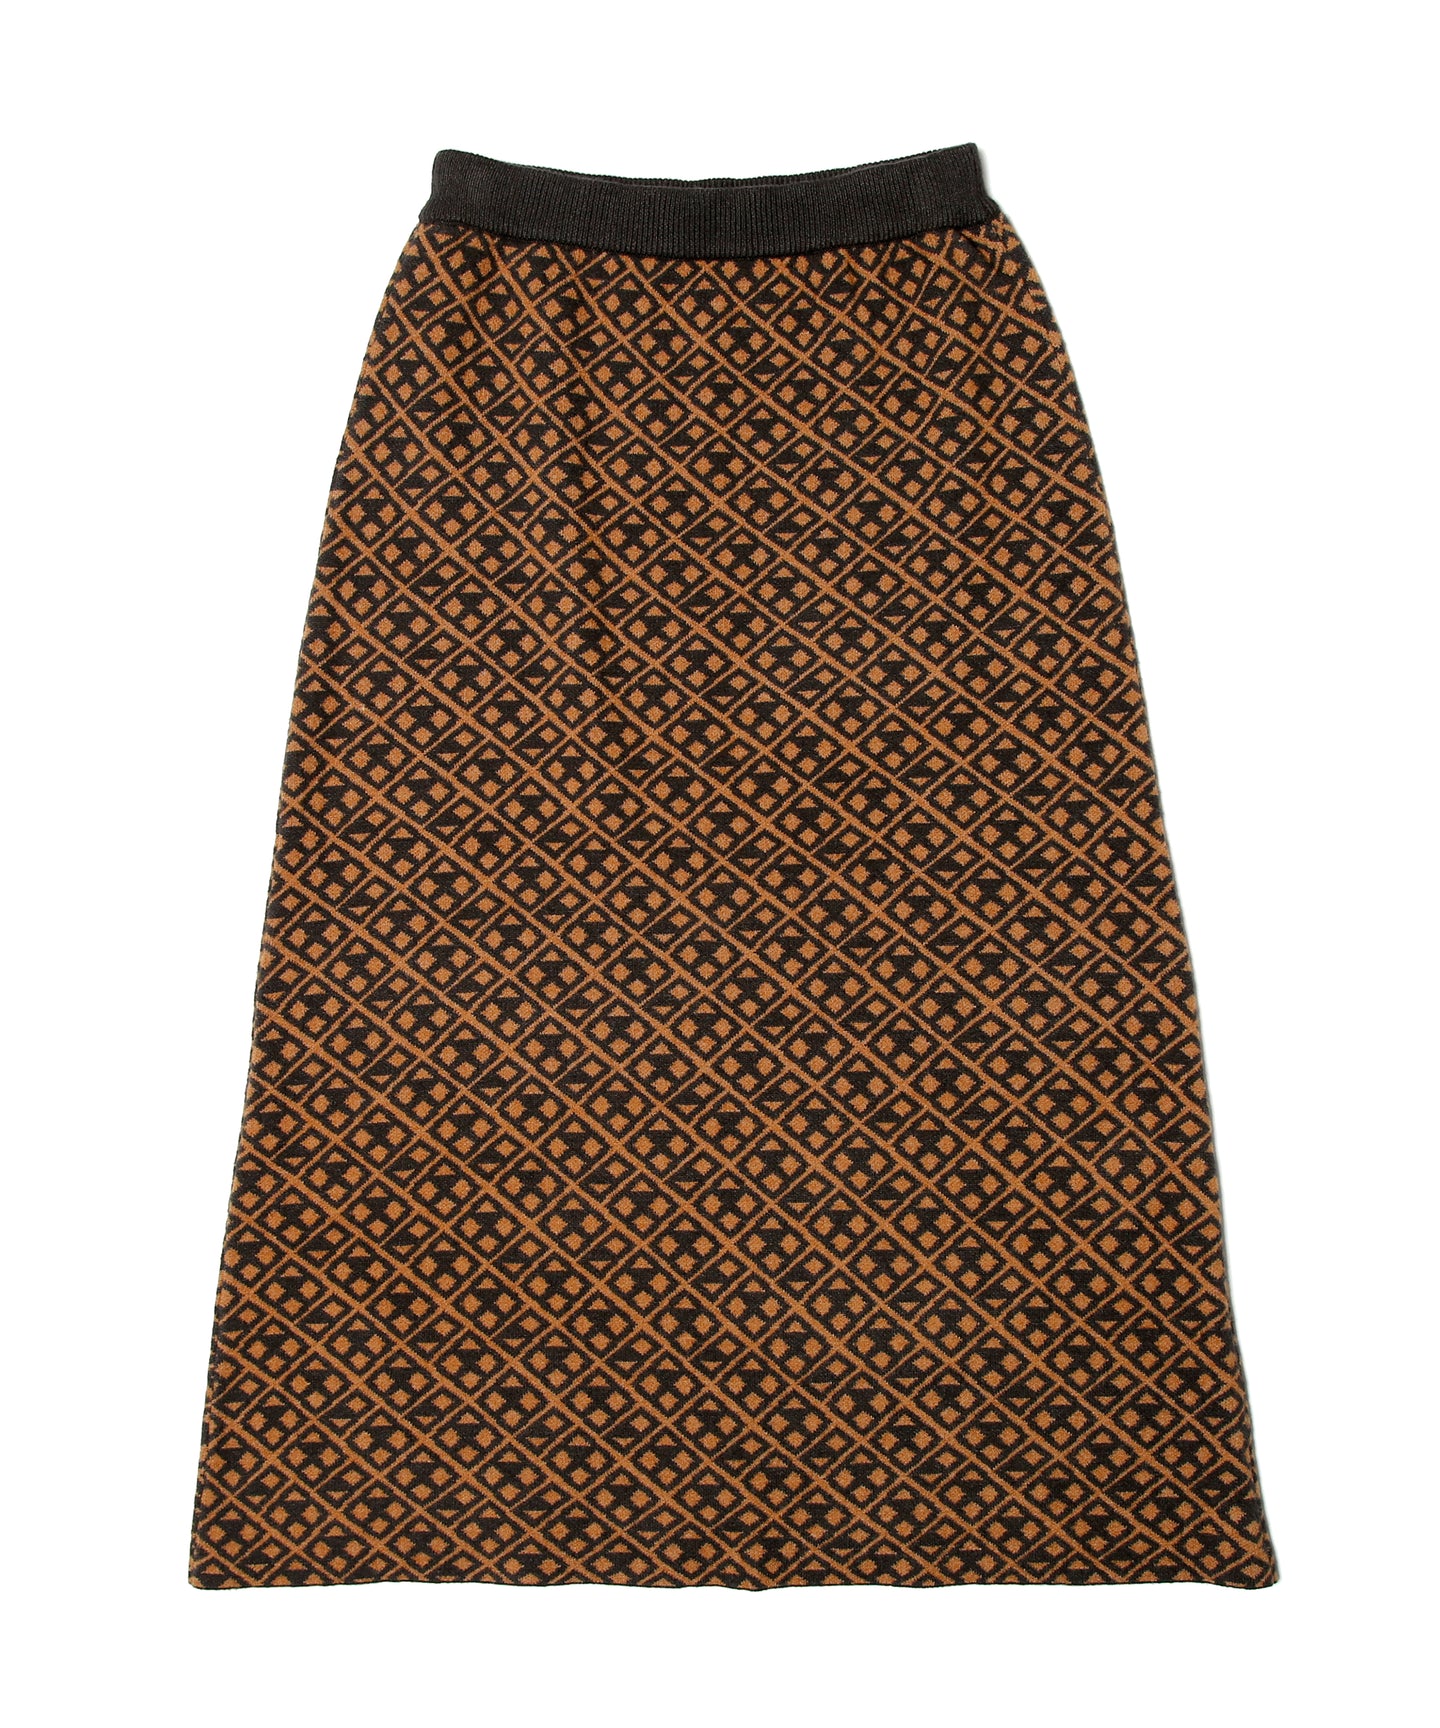 【数量限定商品】446 Total Pattern Knit Long Skirt Brown